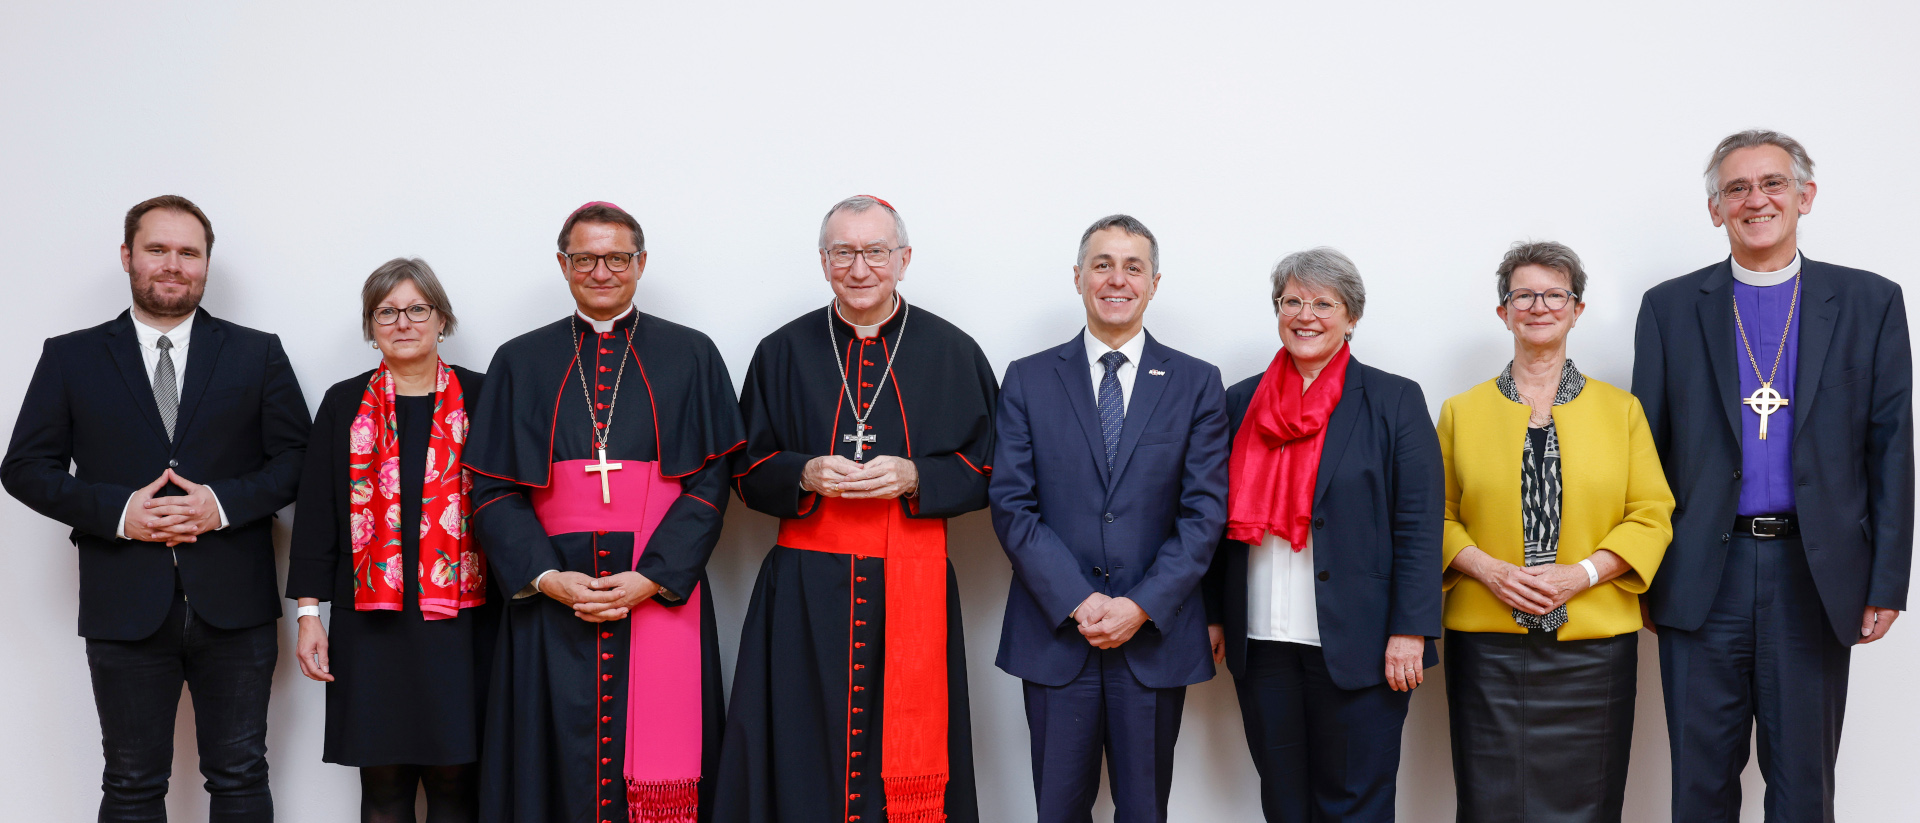 Gipfeltreffen an der Synode der evangelisch-reformierten Kirche Schweiz (EKS) mit Kardinal Parolin und Bundesrar Cassis